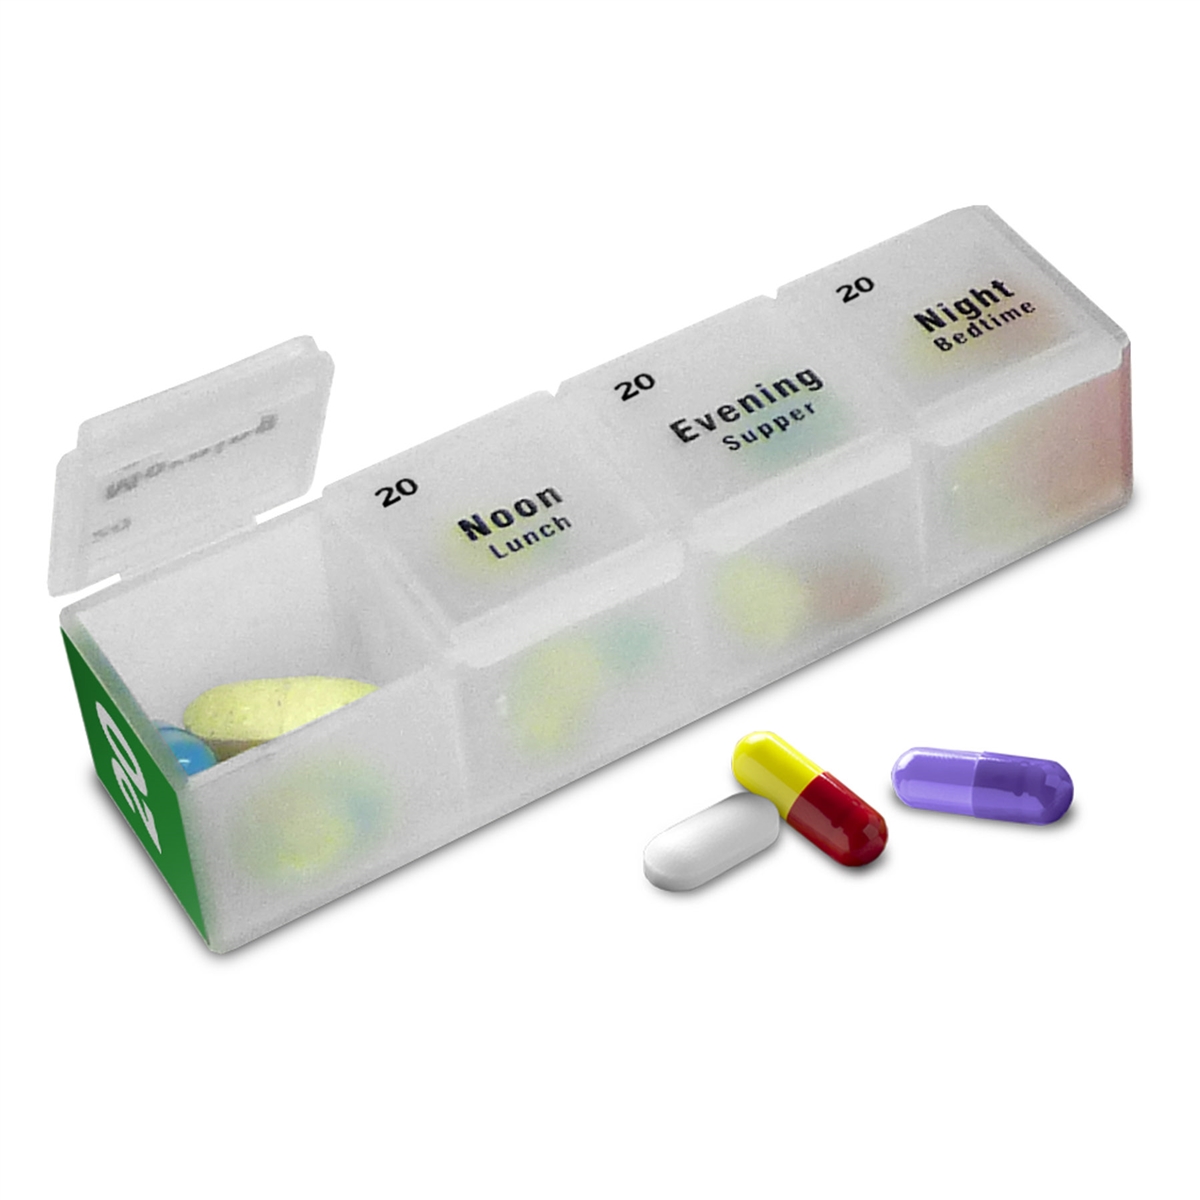 Replacement Standard Pill Box